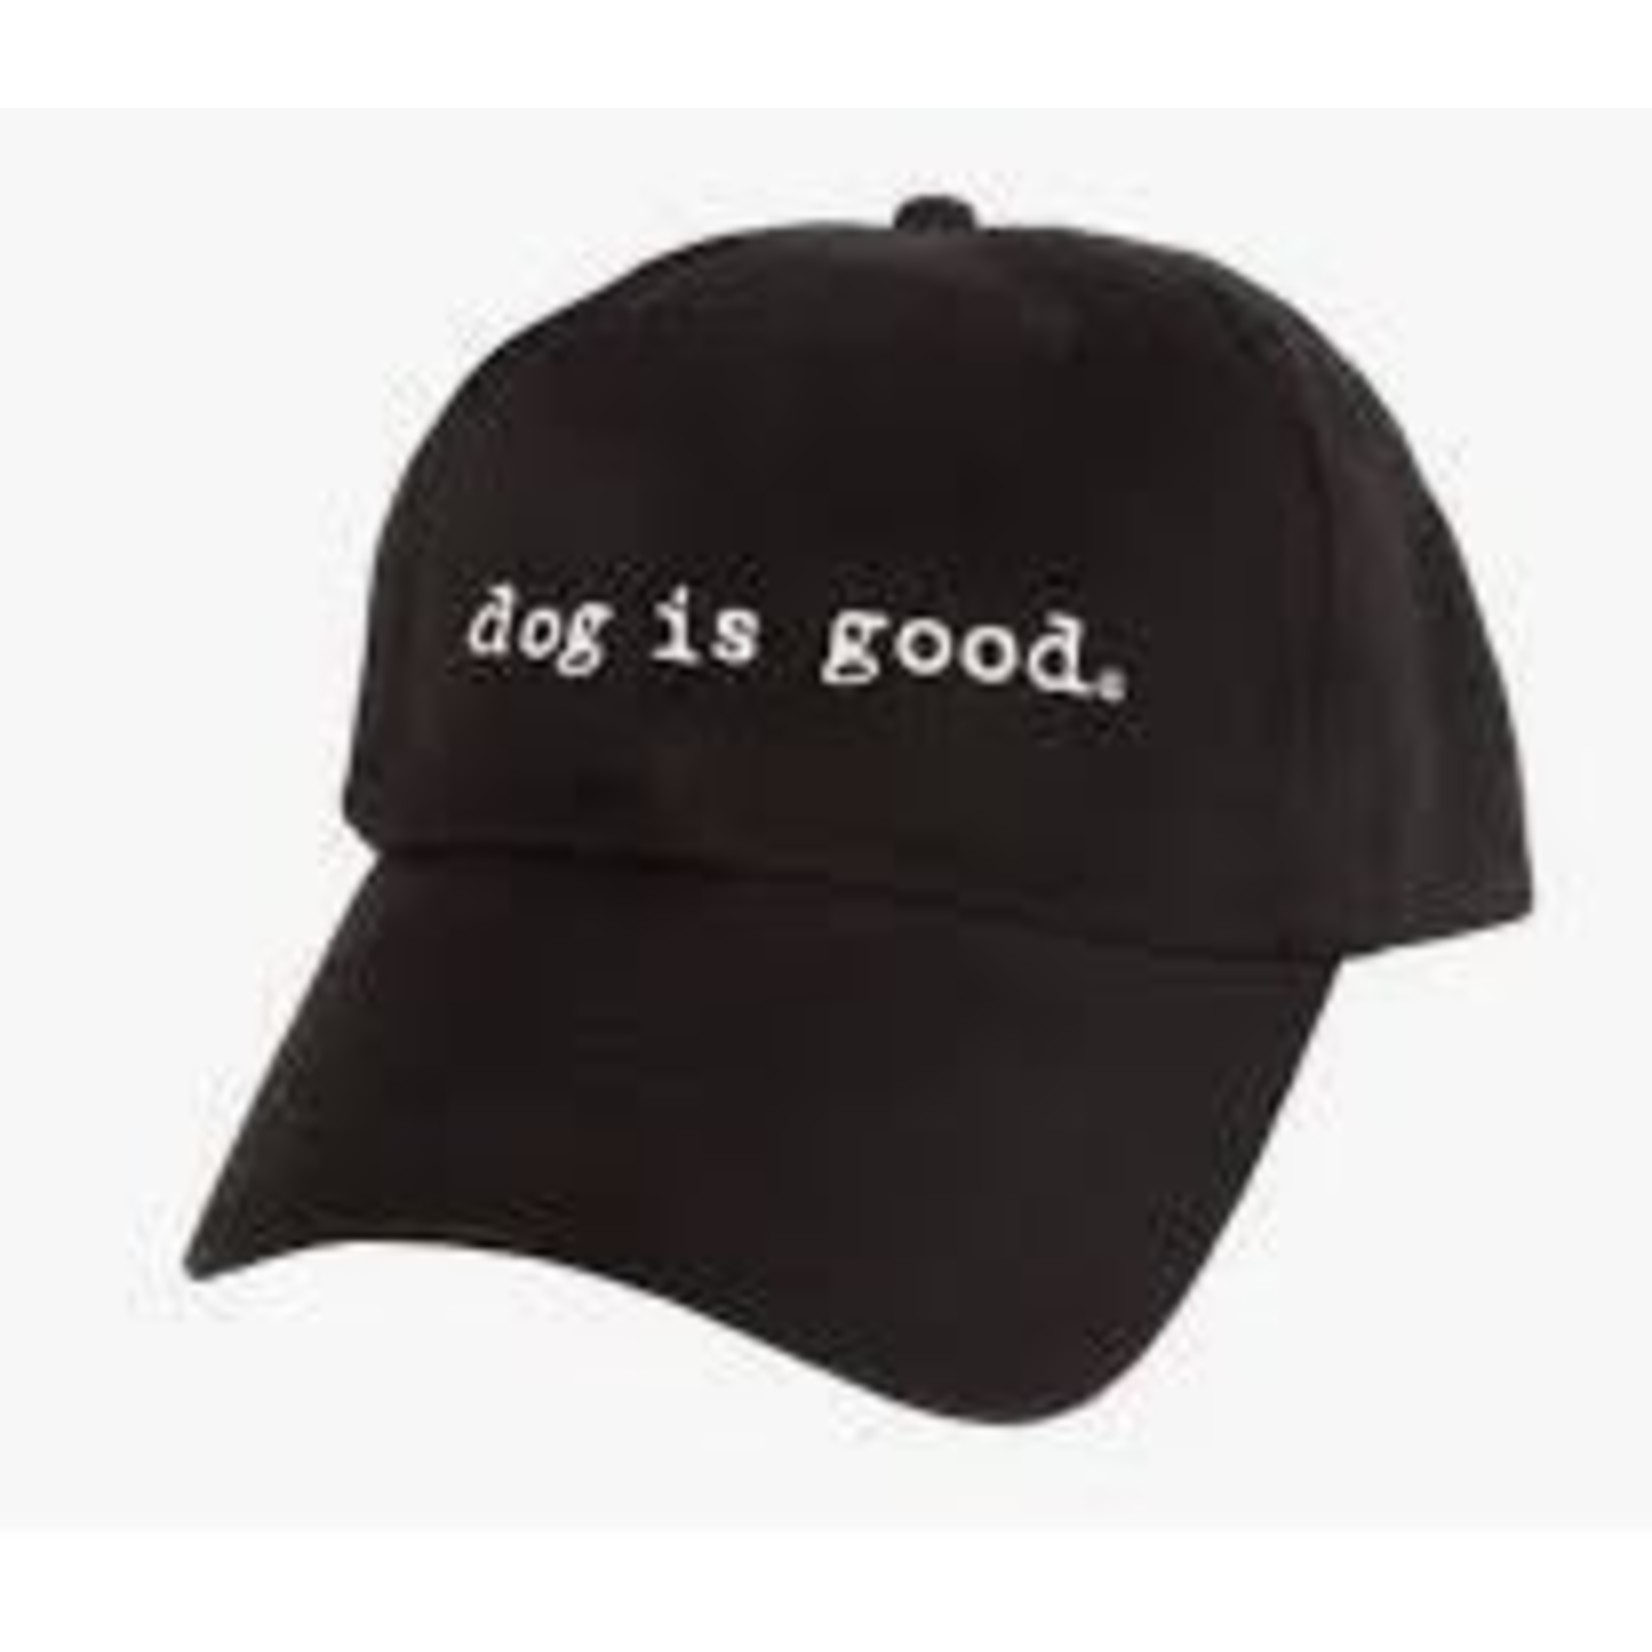 Dog is Good Dog is Good Hats